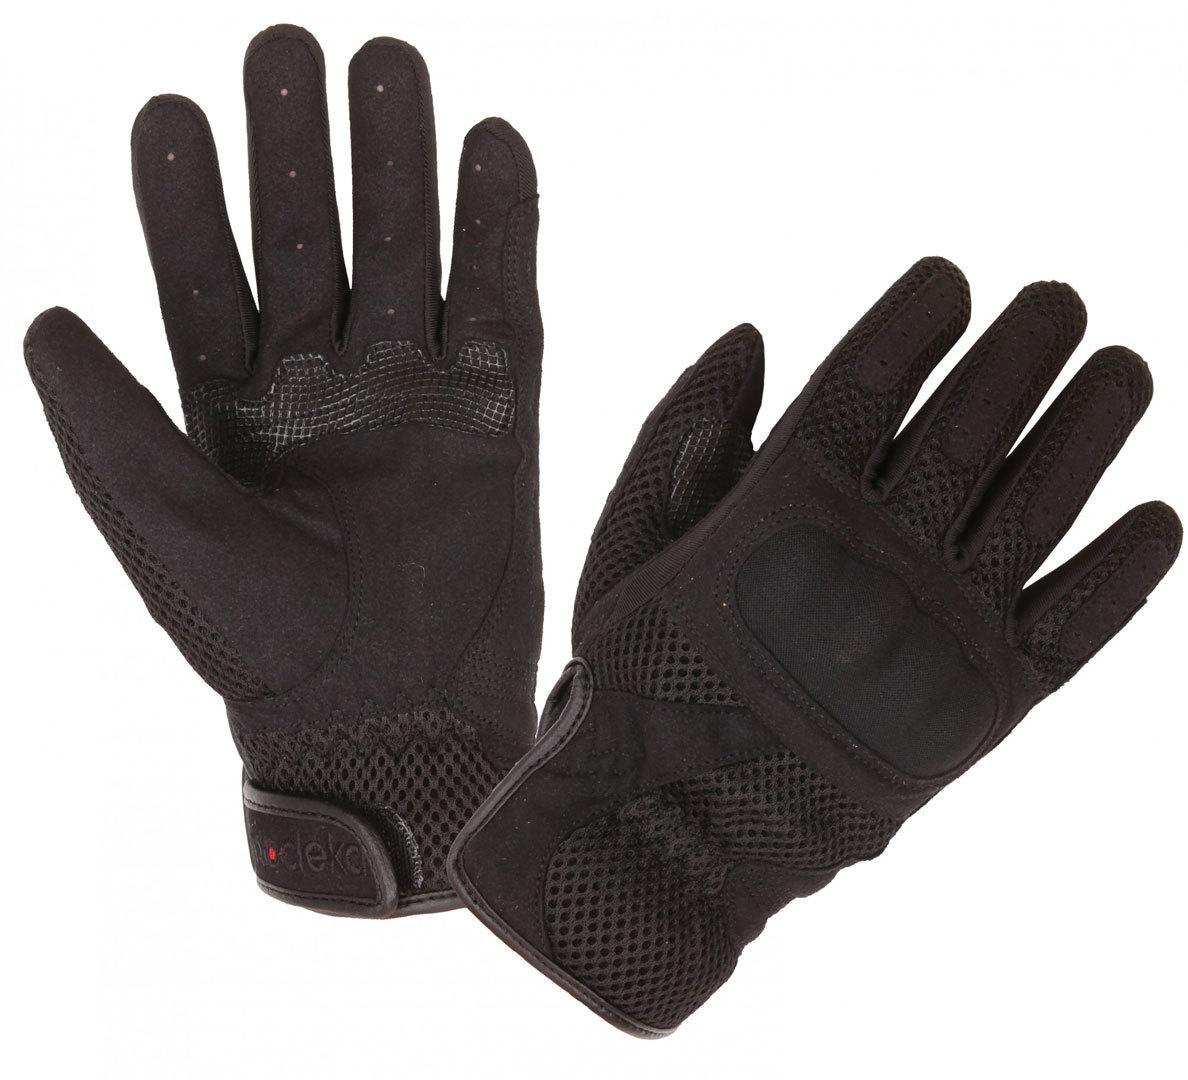 Modeka Mesh Motorcycle Gloves, black, Size M L, black, Size M L